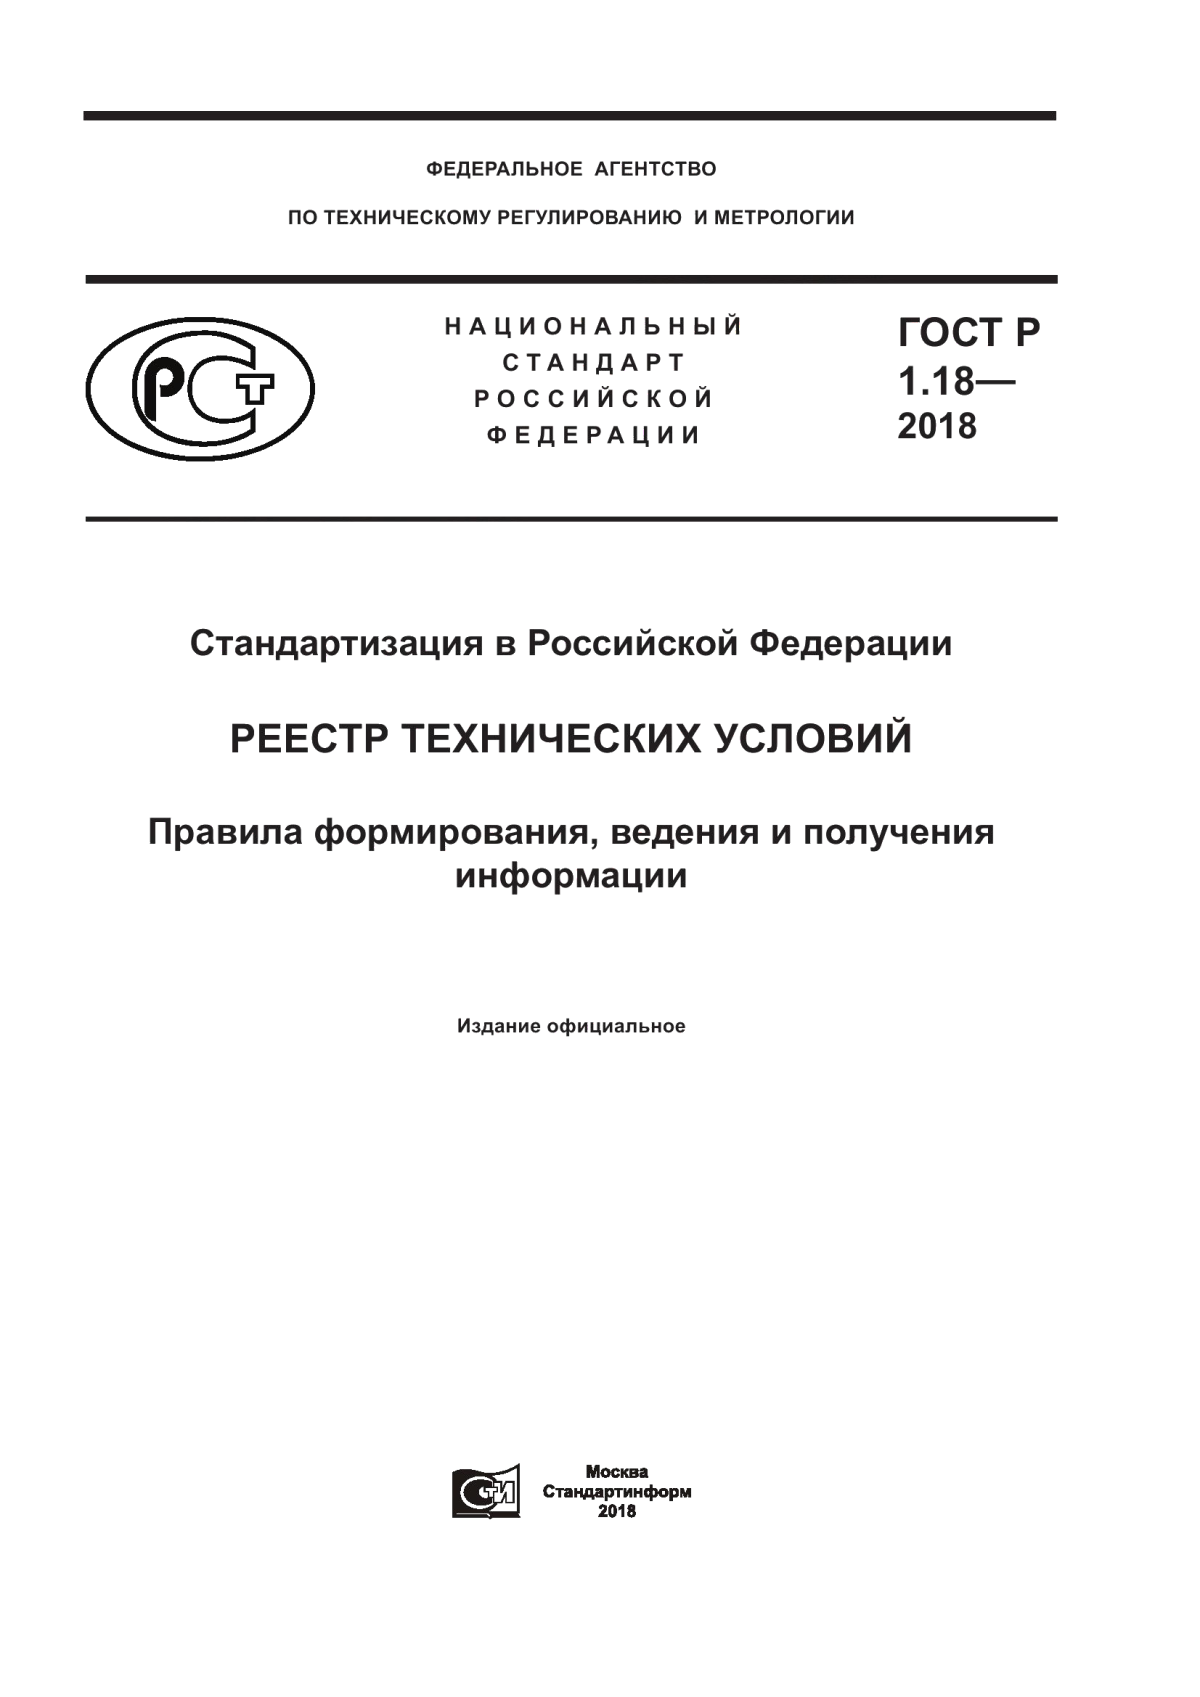 ГОСТ Р 1.18-2018 Стандартизация в Российской Федерации. Реестр технических условий. Правила формирования, ведения и получения информации